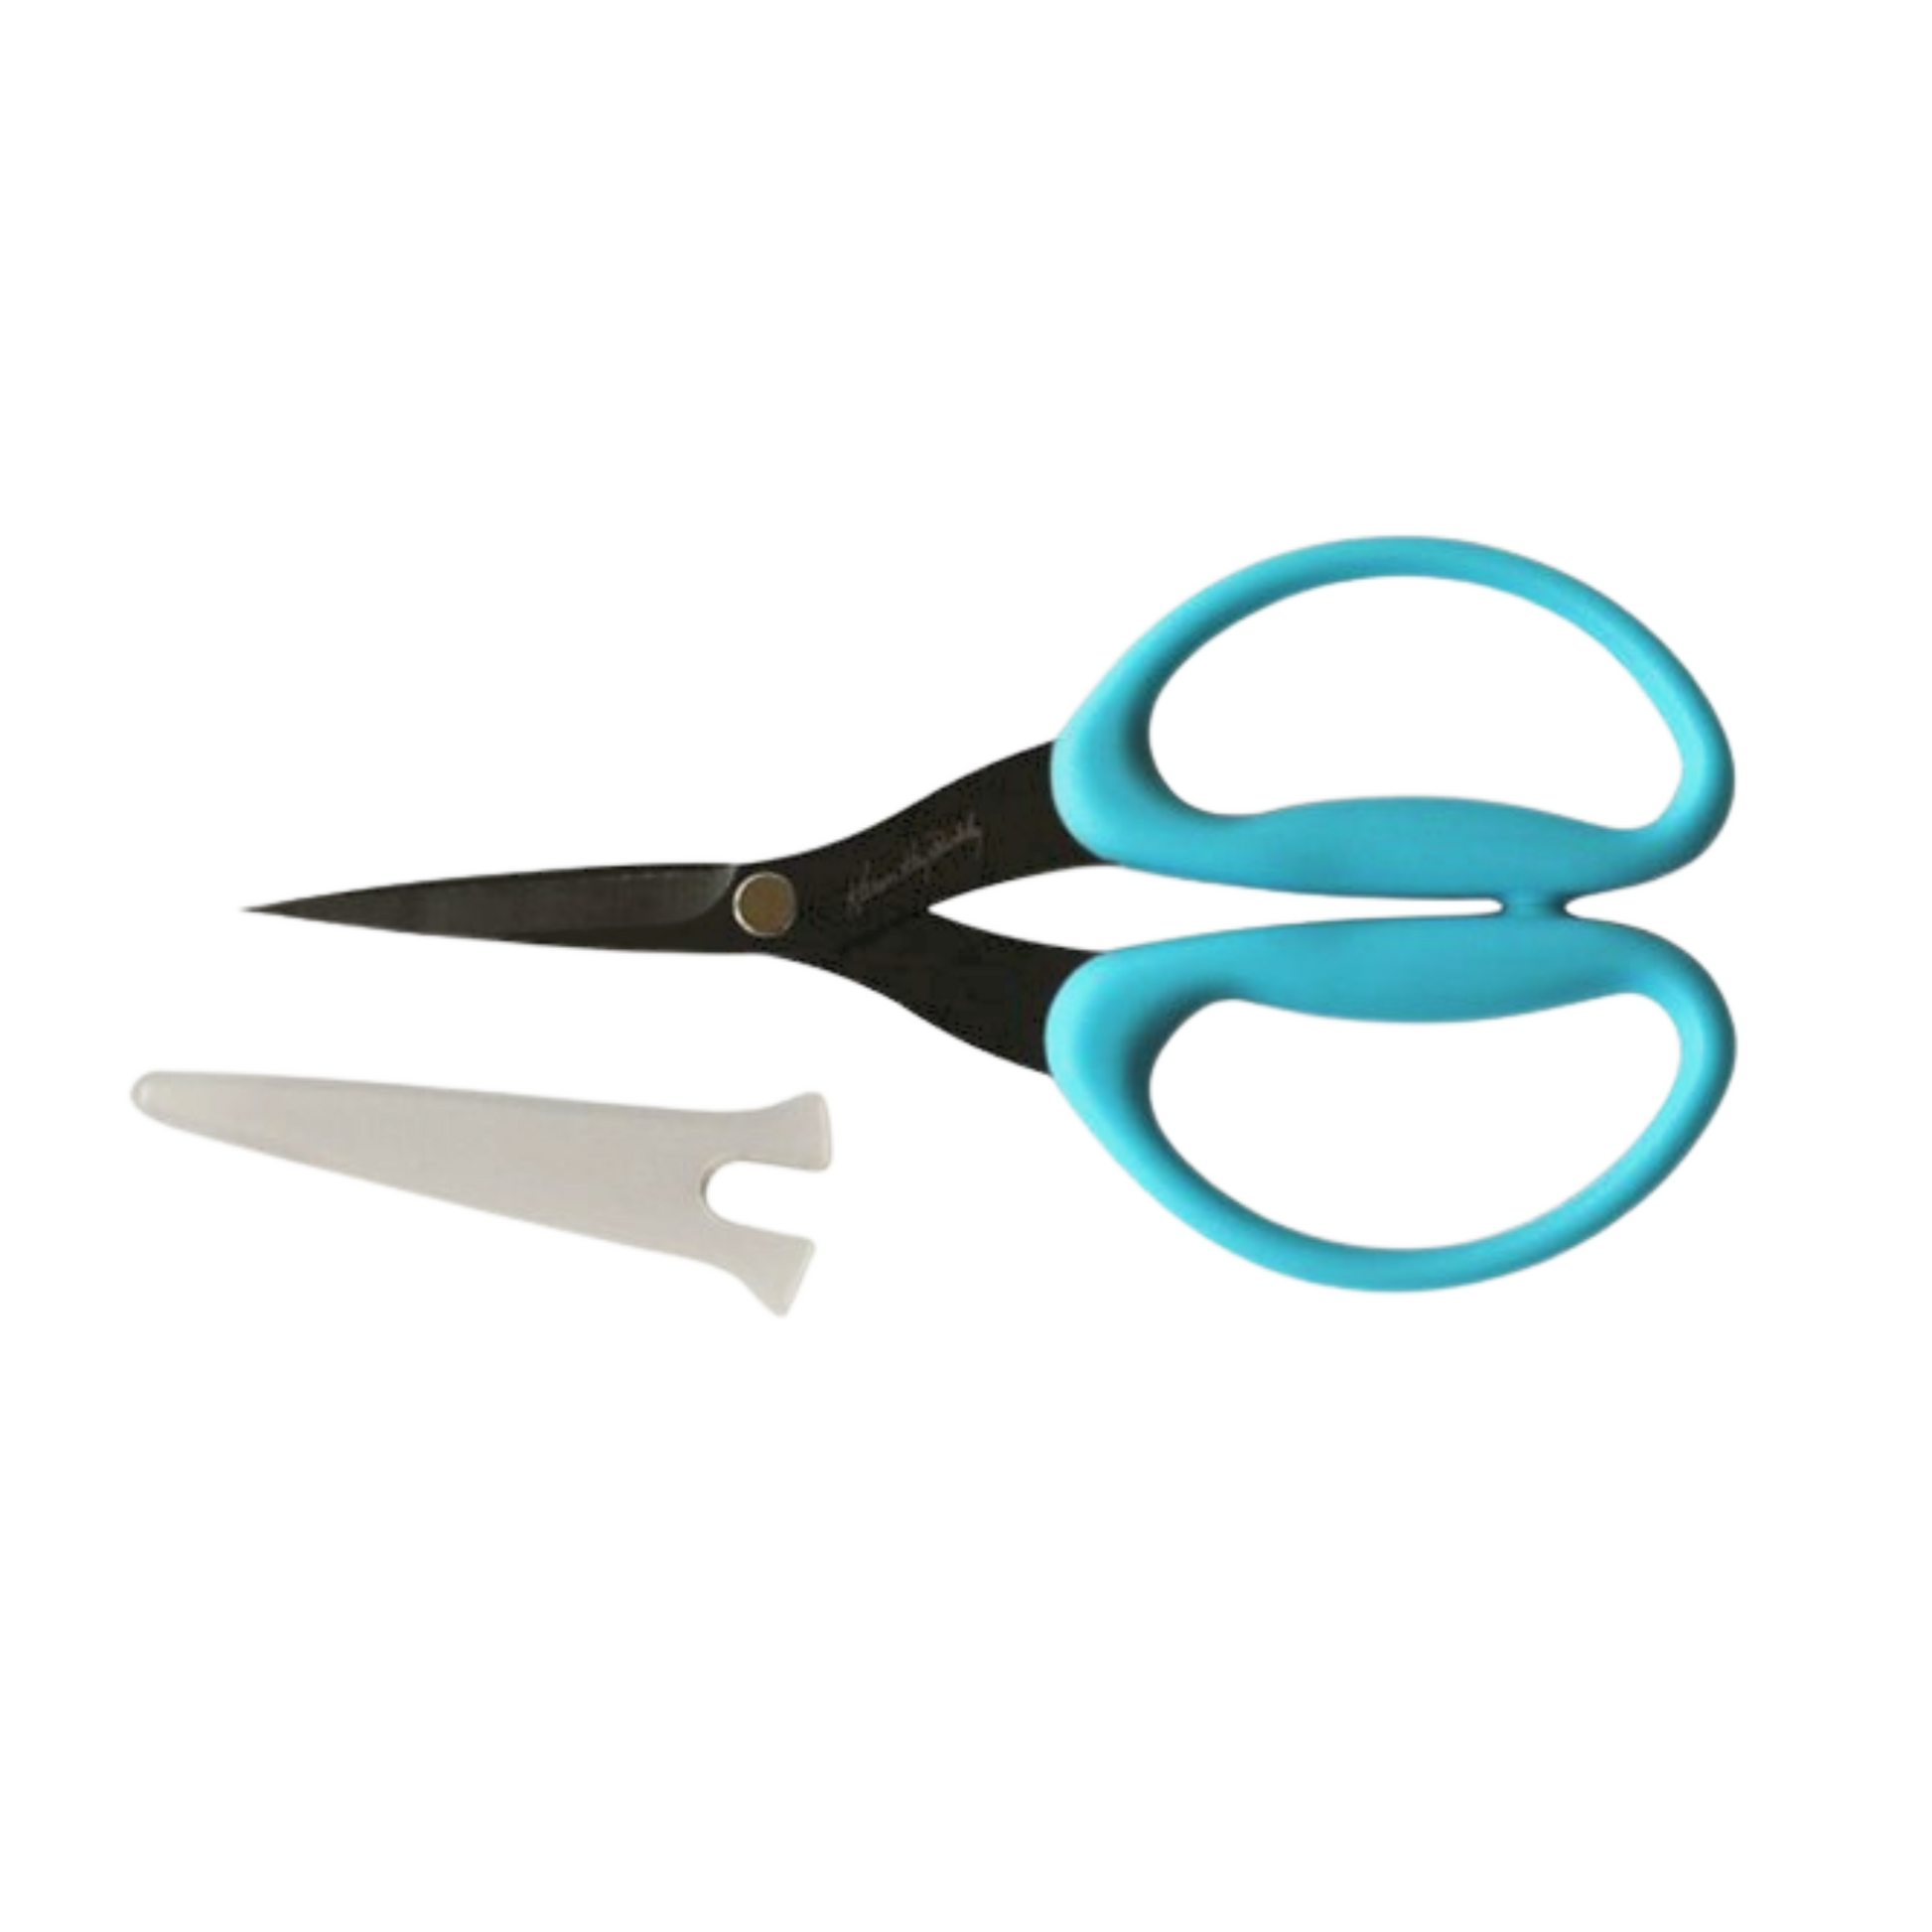 Karen Kay Buckley Perfect Scissors - 6 Inch - Blue